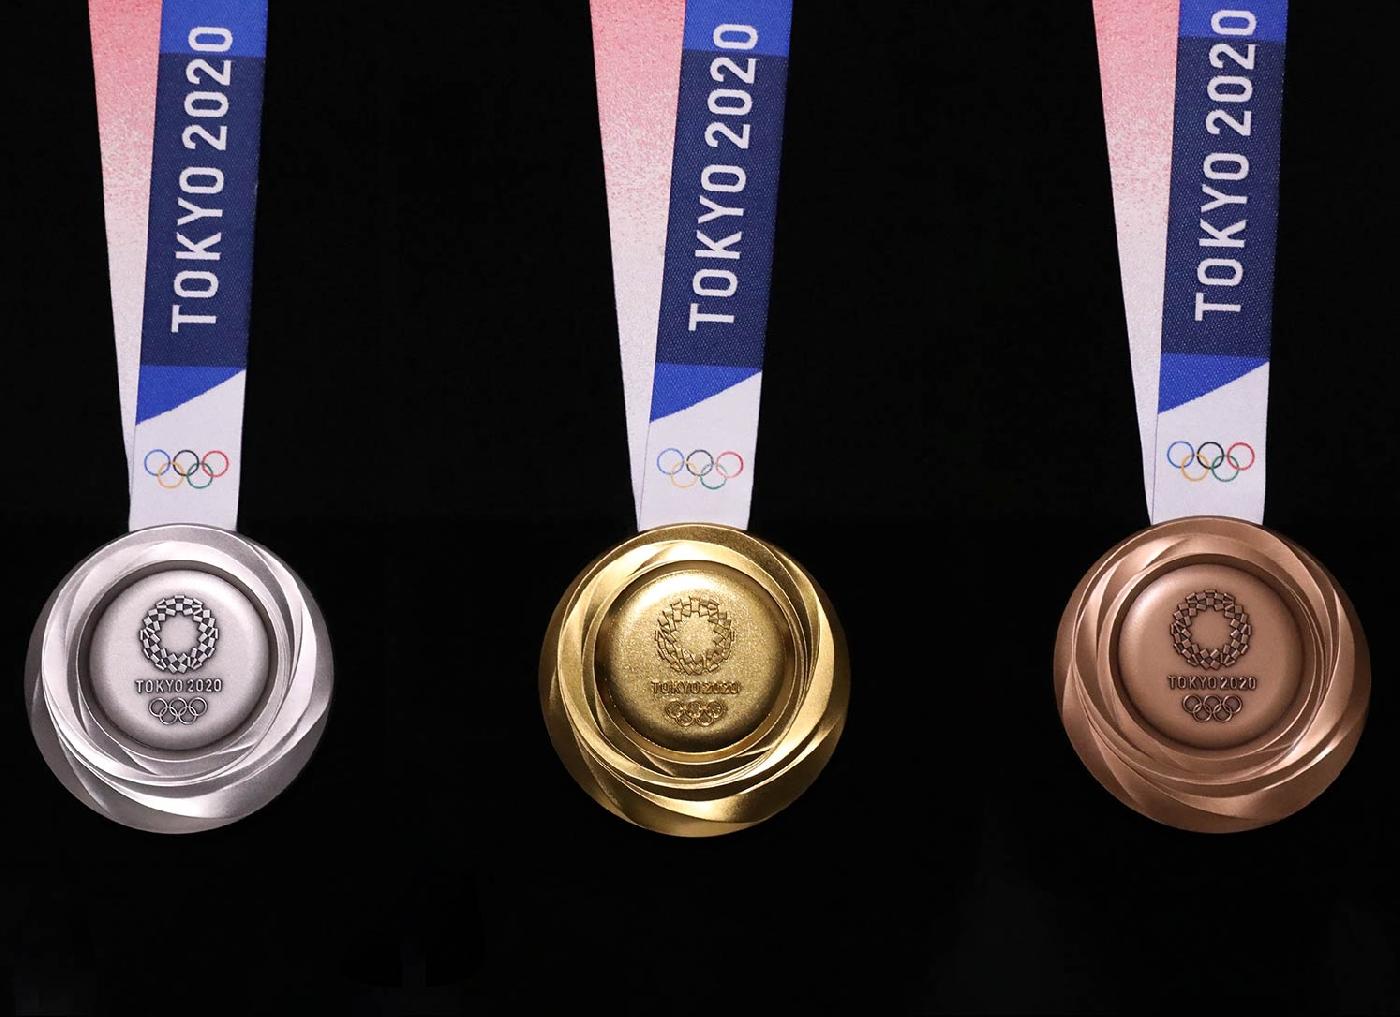 Представлены медали Олимпийских игр 2020 года в Токио